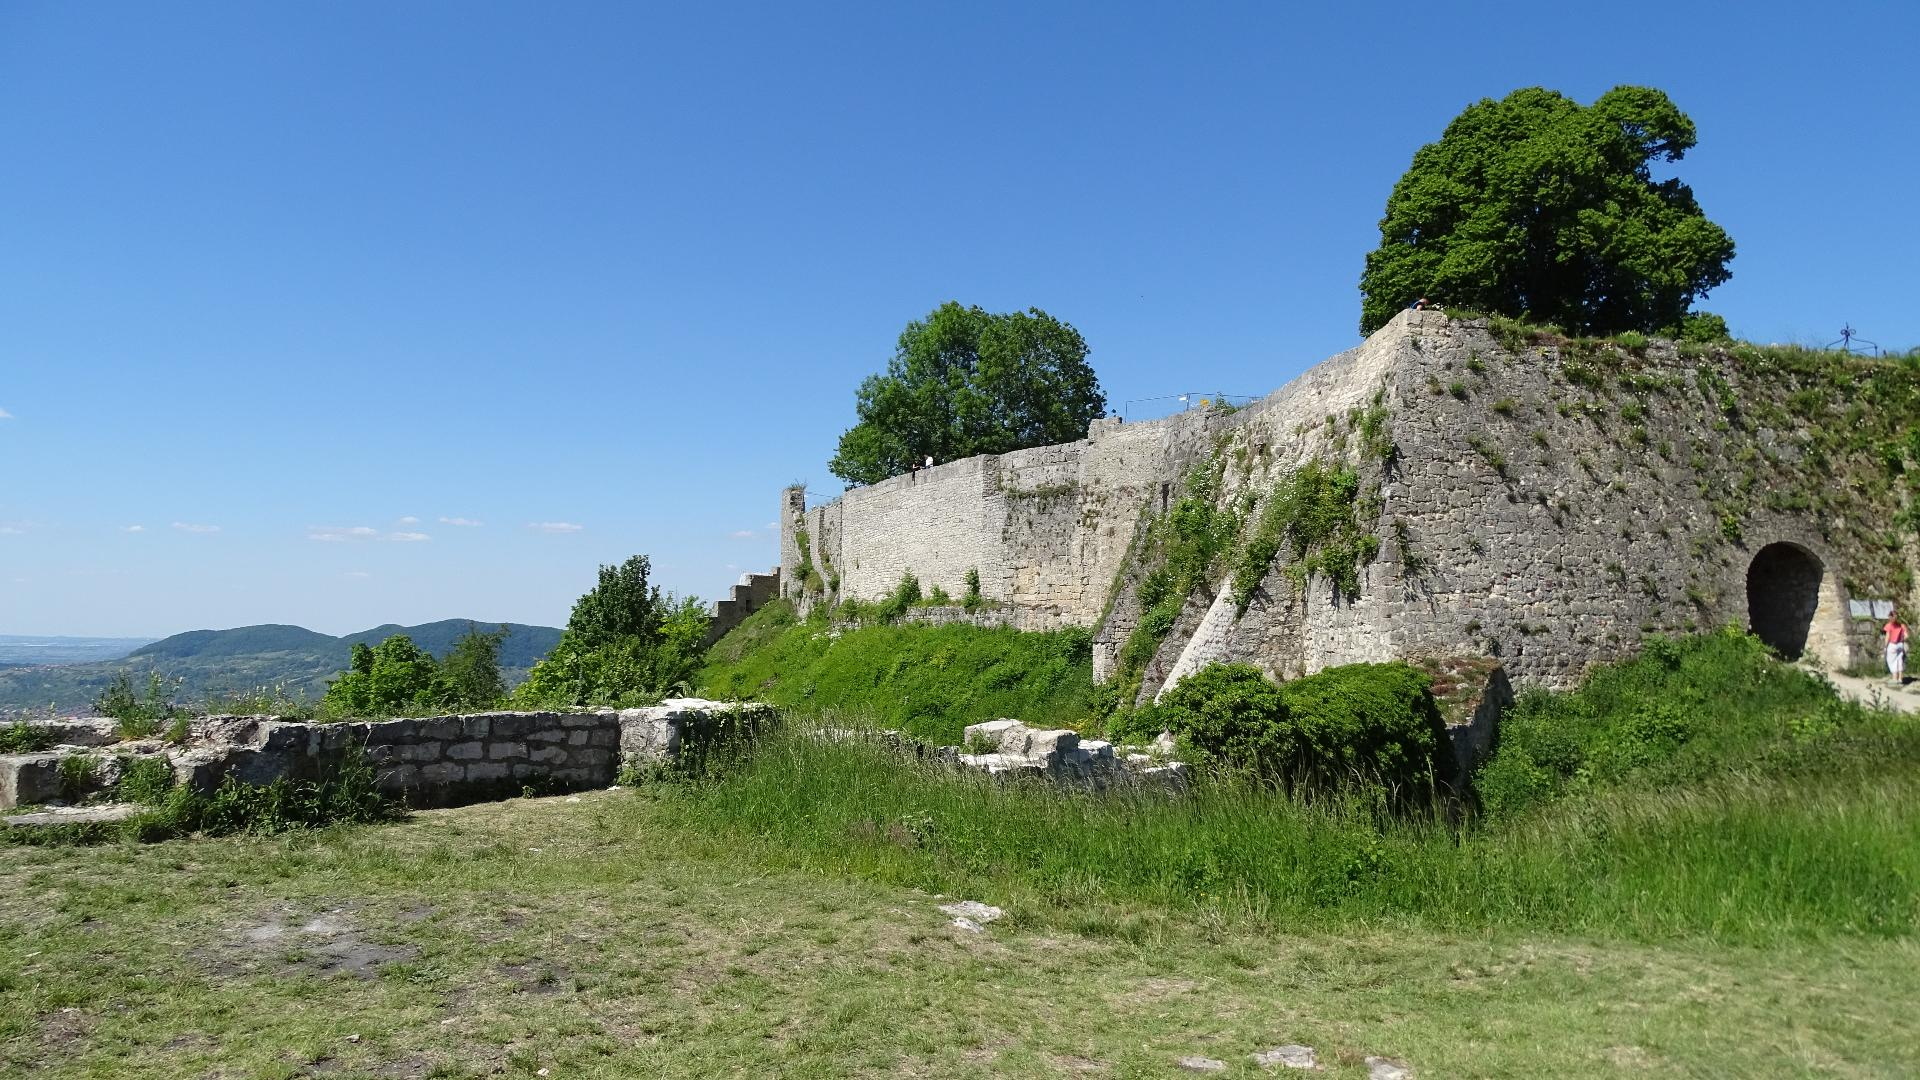 Am früheren Hauptgebäude der Festung